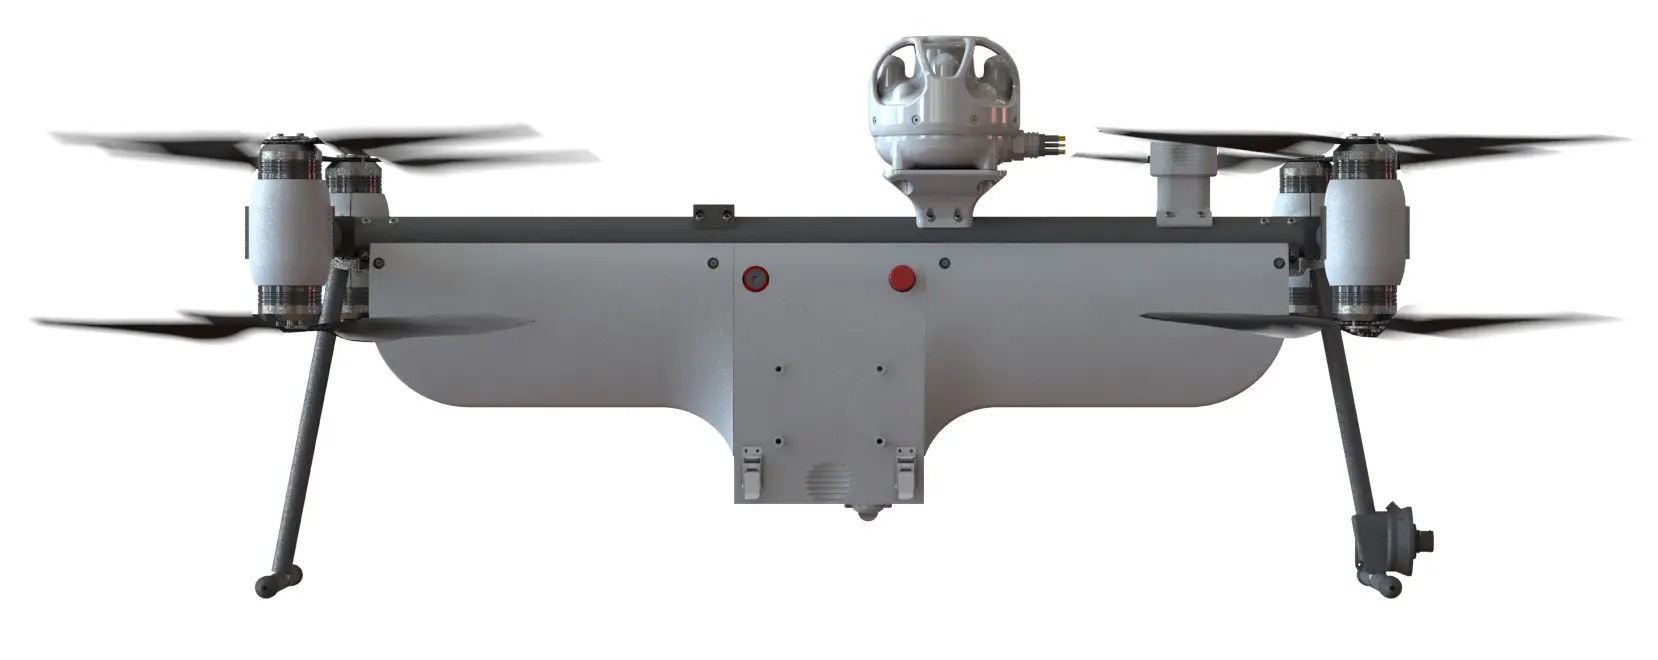 ABD Donanması, insansız denizaltından yüzebilen ve uçabilen drone fırlatacak